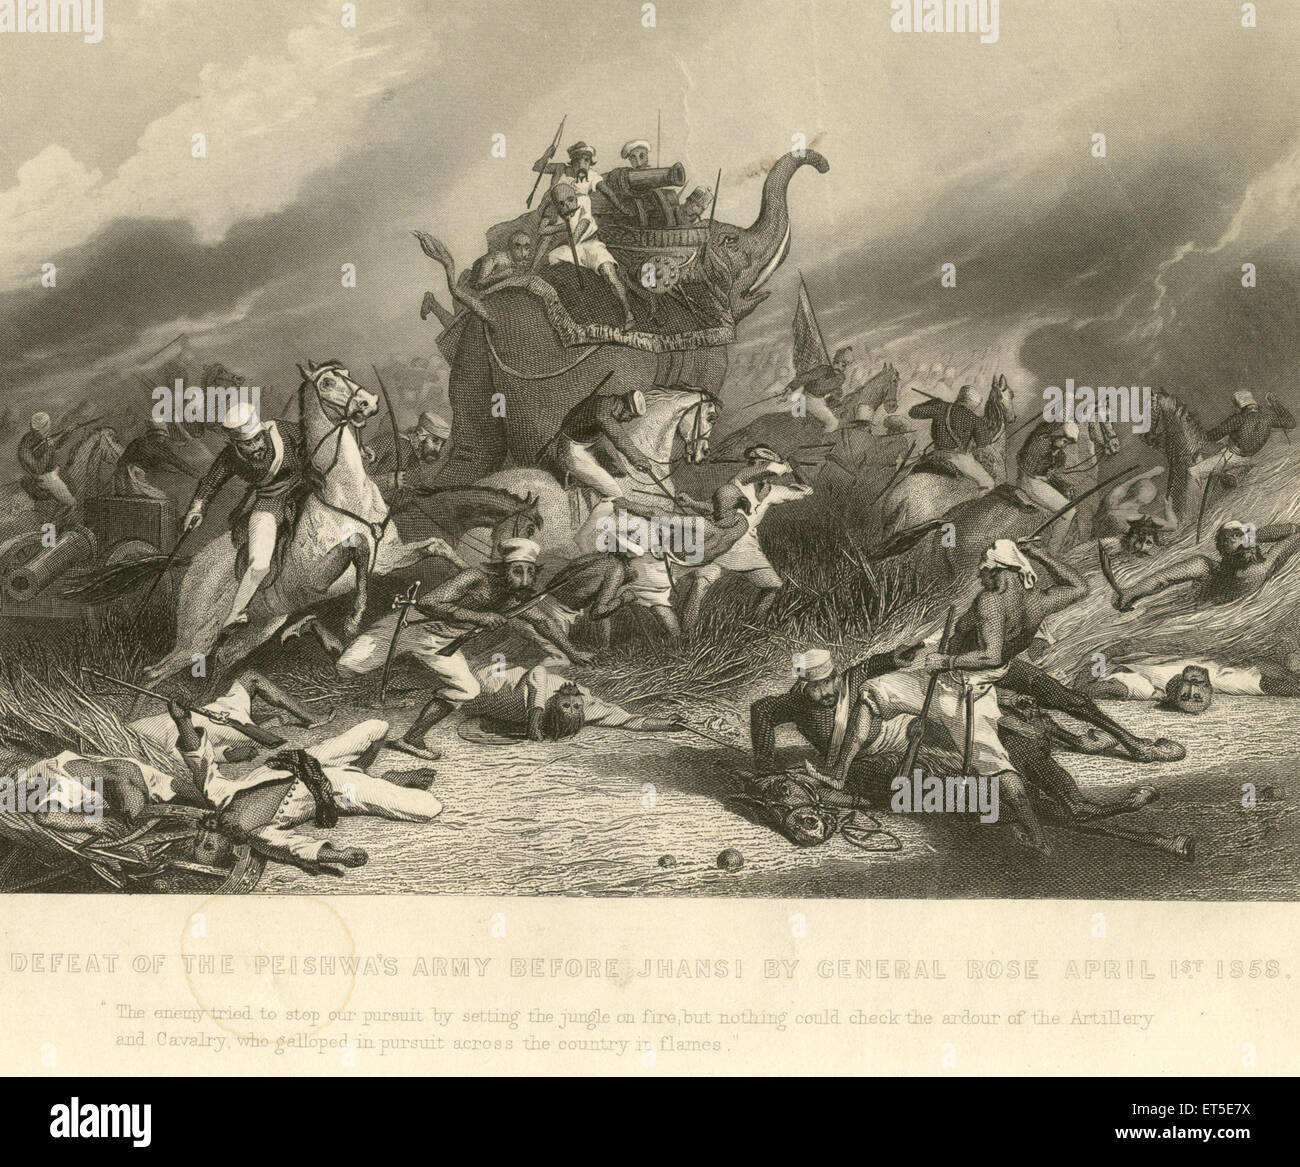 Militär und Gemeinschaft Meuterei Ansichten Niederlage der Peishwa Armee vor Jhansi von General Rose; 1. April 1858; Indien Stockfoto